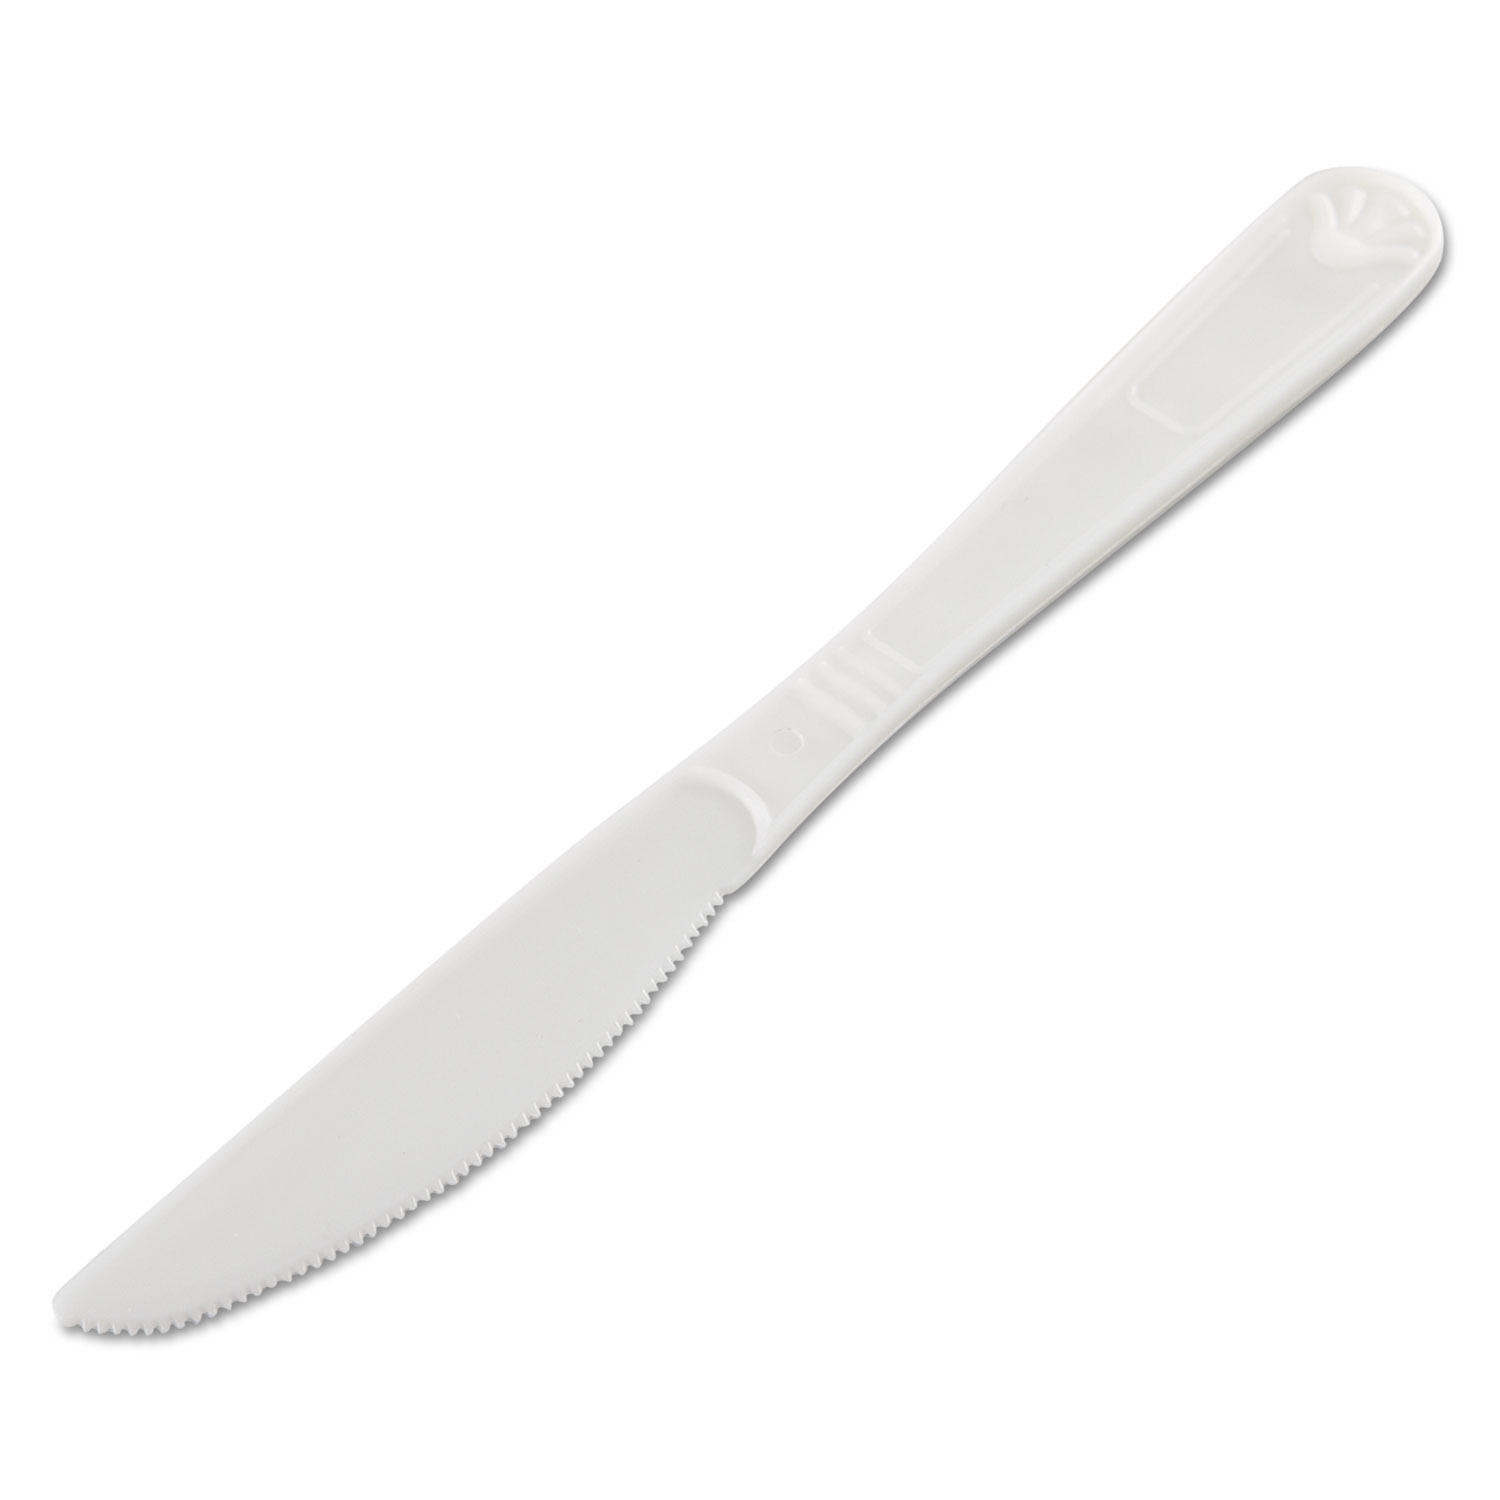  GEN GENHYWKN Heavyweight Cutlery, Knives, Polypropylene, White, 1000/Carton (GENHYWKN) 